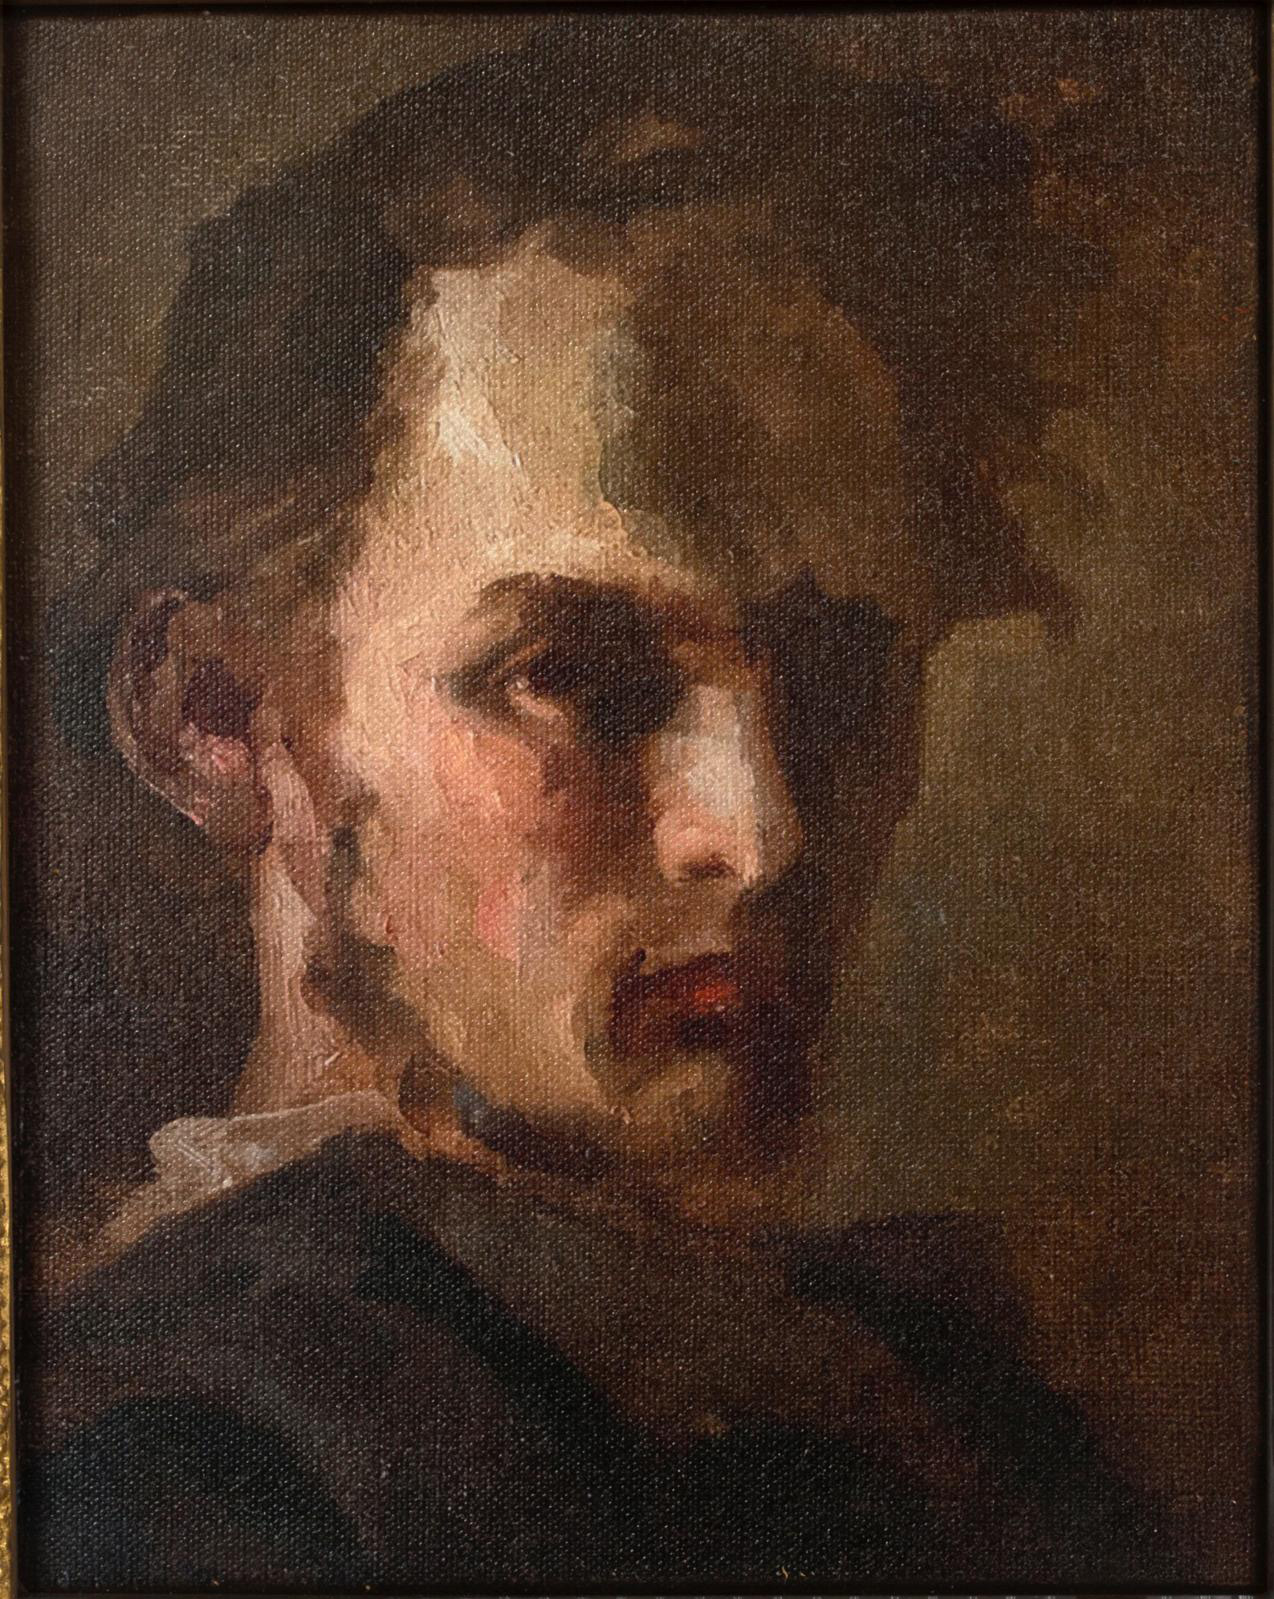 Théodore Géricault (1791–1824), Self-portrait, oil on canvas, c. 1812, 27 x 22 cm/10.62 x 8.66 in. Estimate: €30,000/40,000